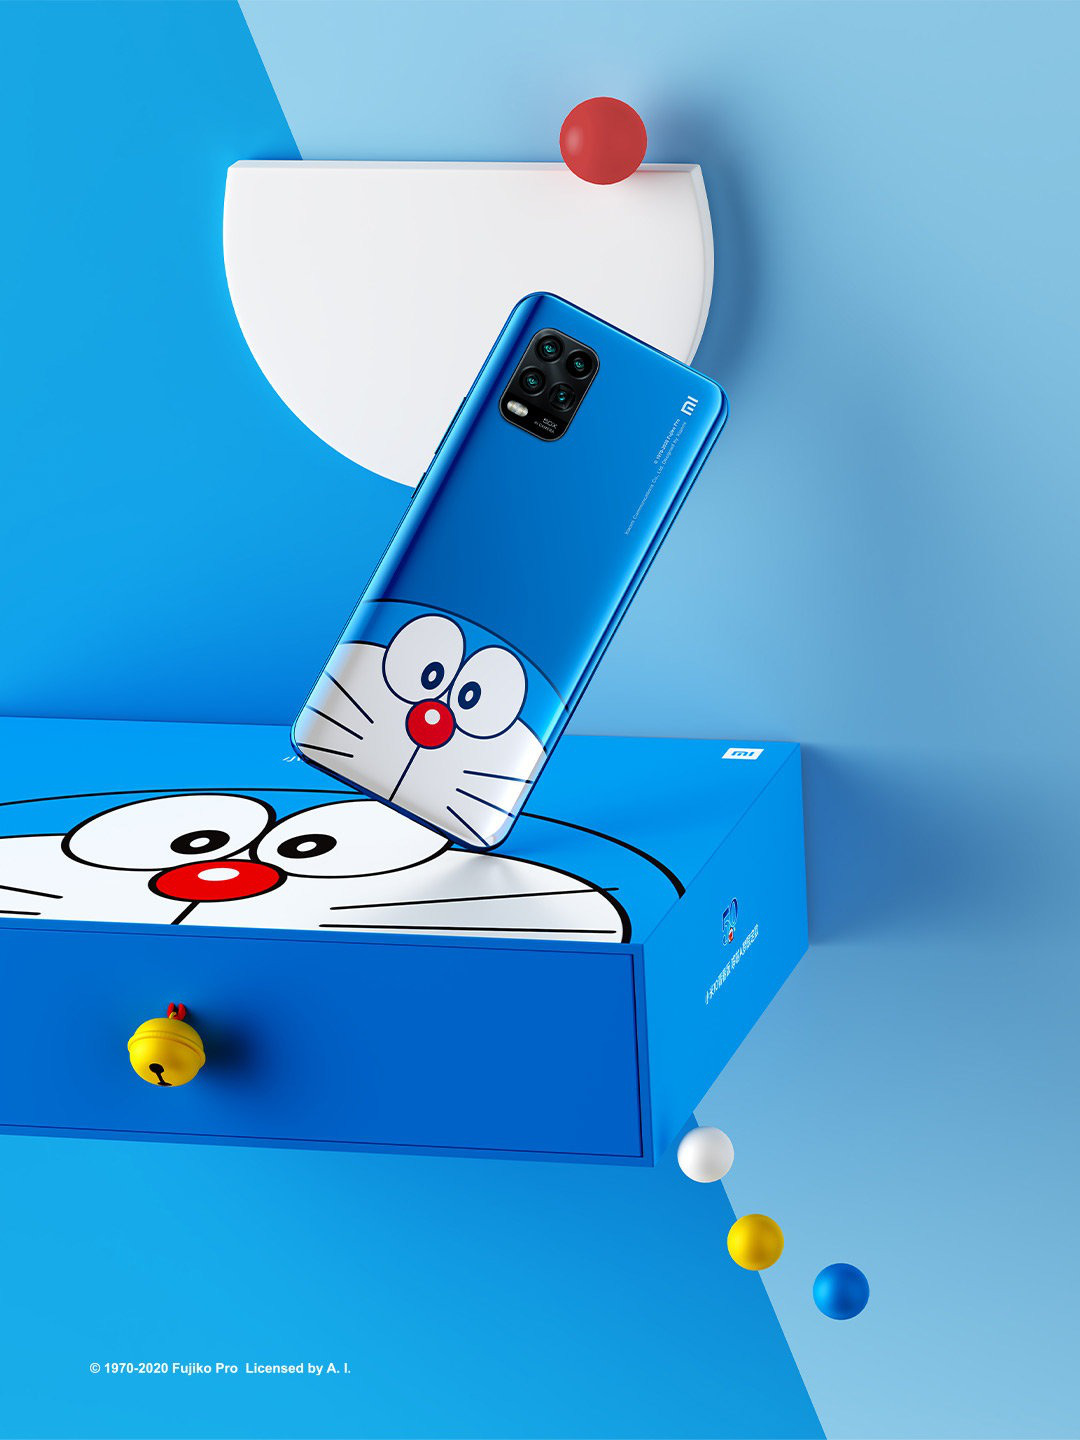 Bạn đang tìm kiếm mẫu điện thoại Doraemon để trang trí cho chiếc điện thoại của mình? Chúc mừng bạn đã tìm đúng chỗ! Với bộ sưu tập mẫu điện thoại Doraemon phong phú và đa dạng, bạn sẽ tìm thấy ngay những thiết kế yêu thích của mình để biến chiếc điện thoại của mình thành một món đồ chơi dễ thương và đặc biệt.